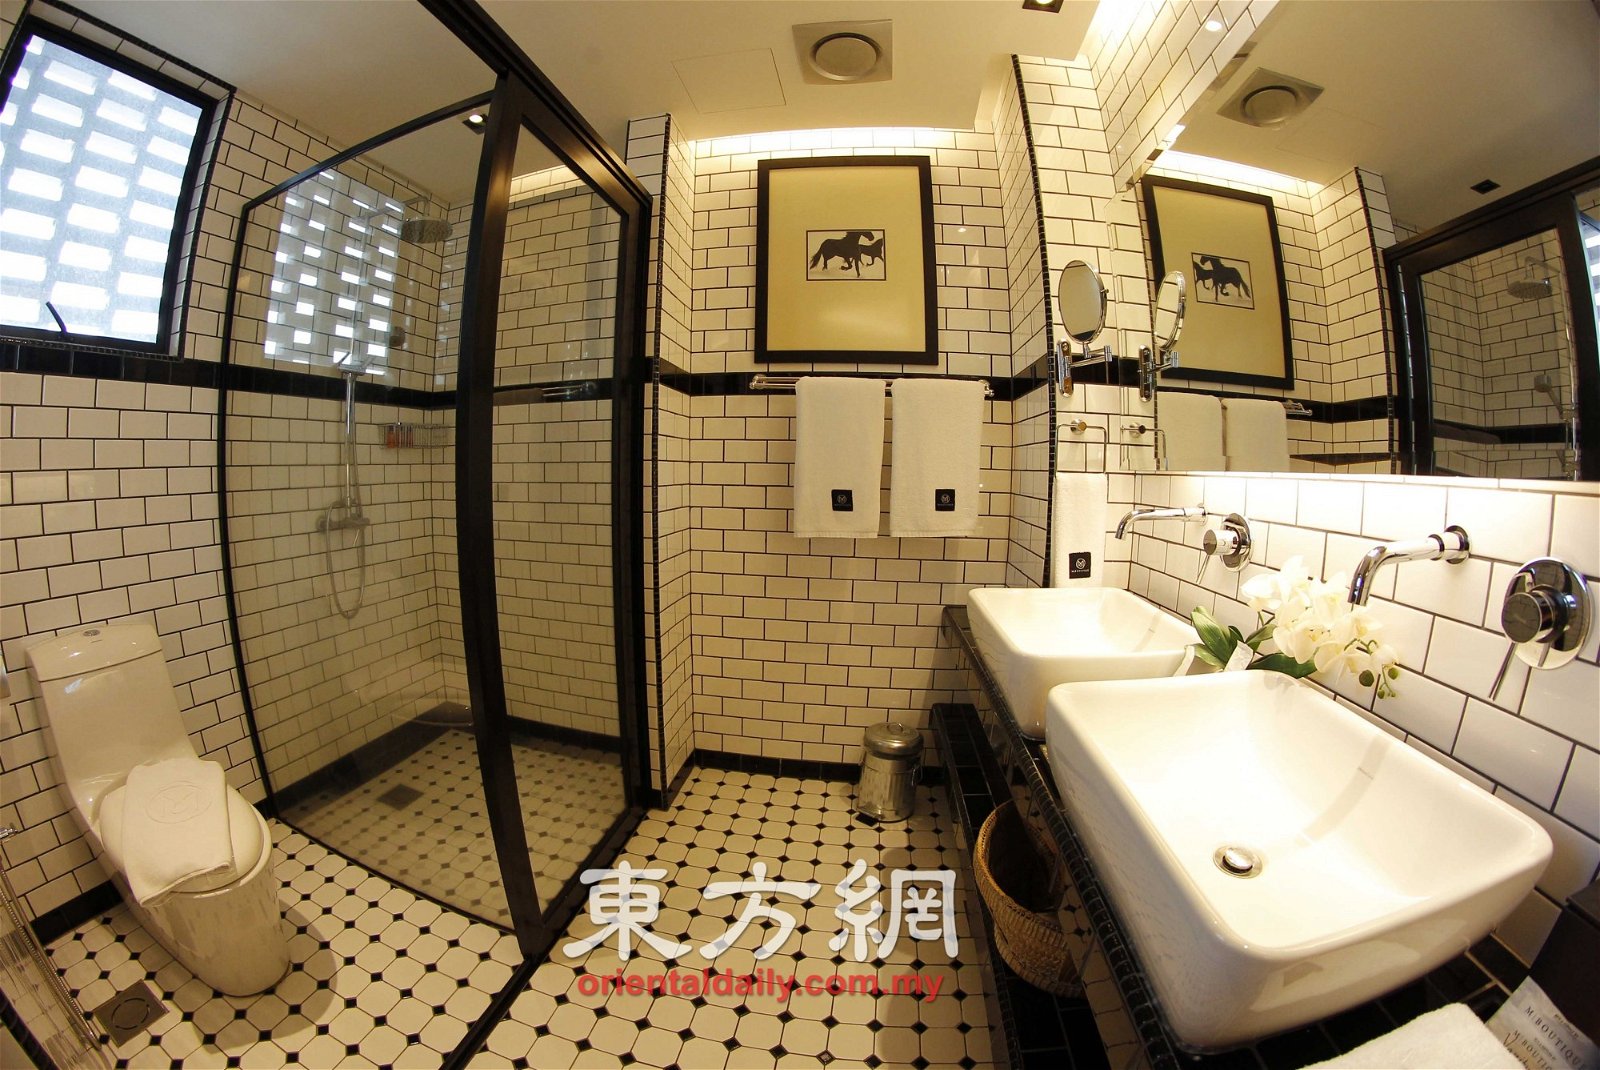 独立浴室和厕所，让顾客有舒适和足够的空间享受沐浴时光。